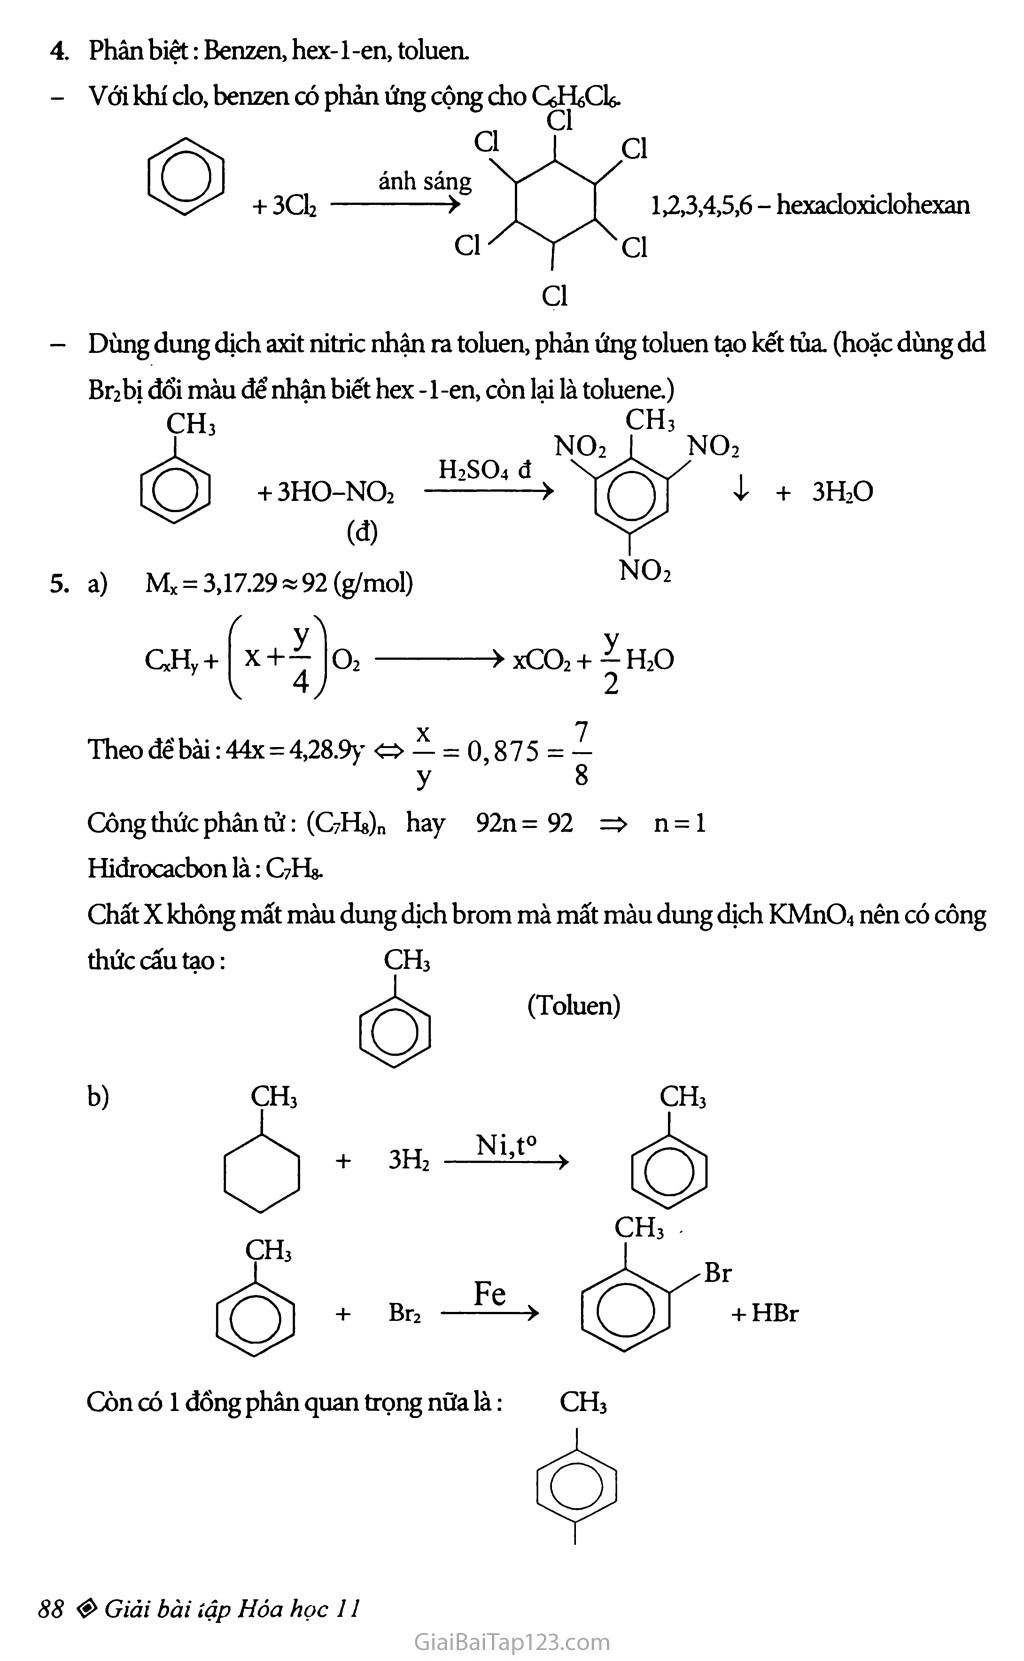 Bài 35: Benzen và đồng đẳng: Một số hiđrocacbon thơm khác trang 4